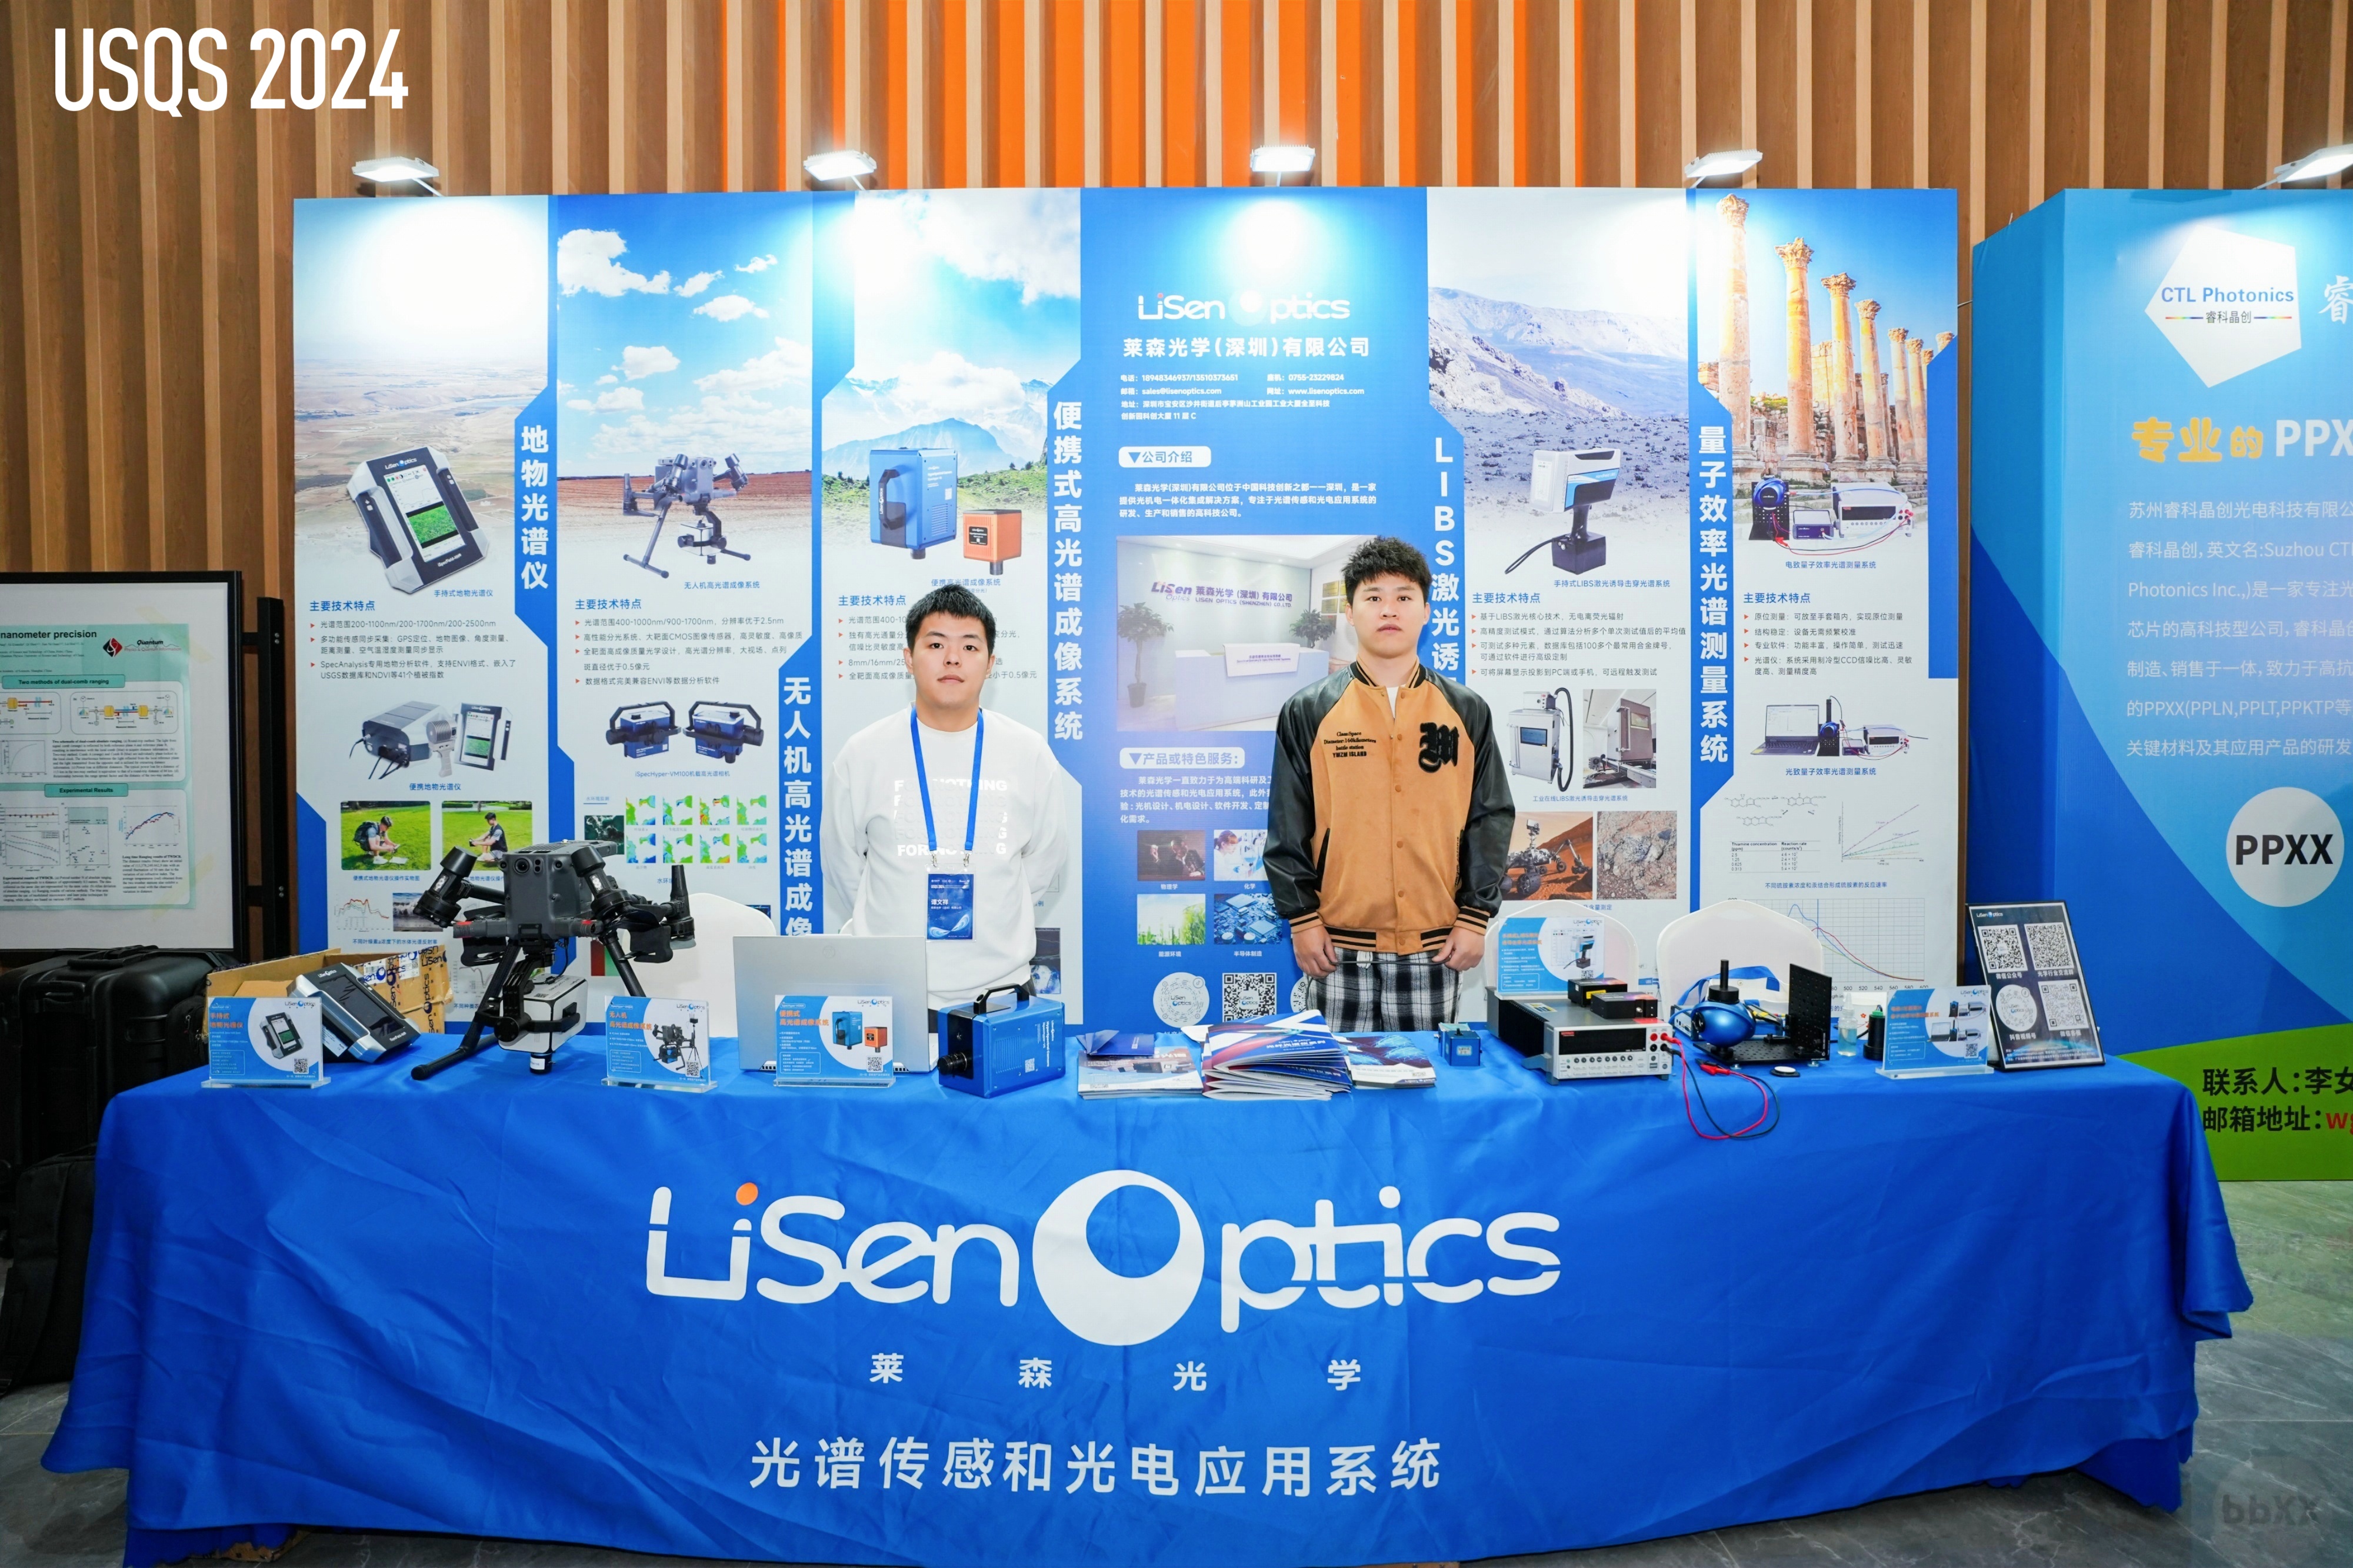 聚焦量子 | 莱森光学携明星产品赴超快科学与量子感知国际会议